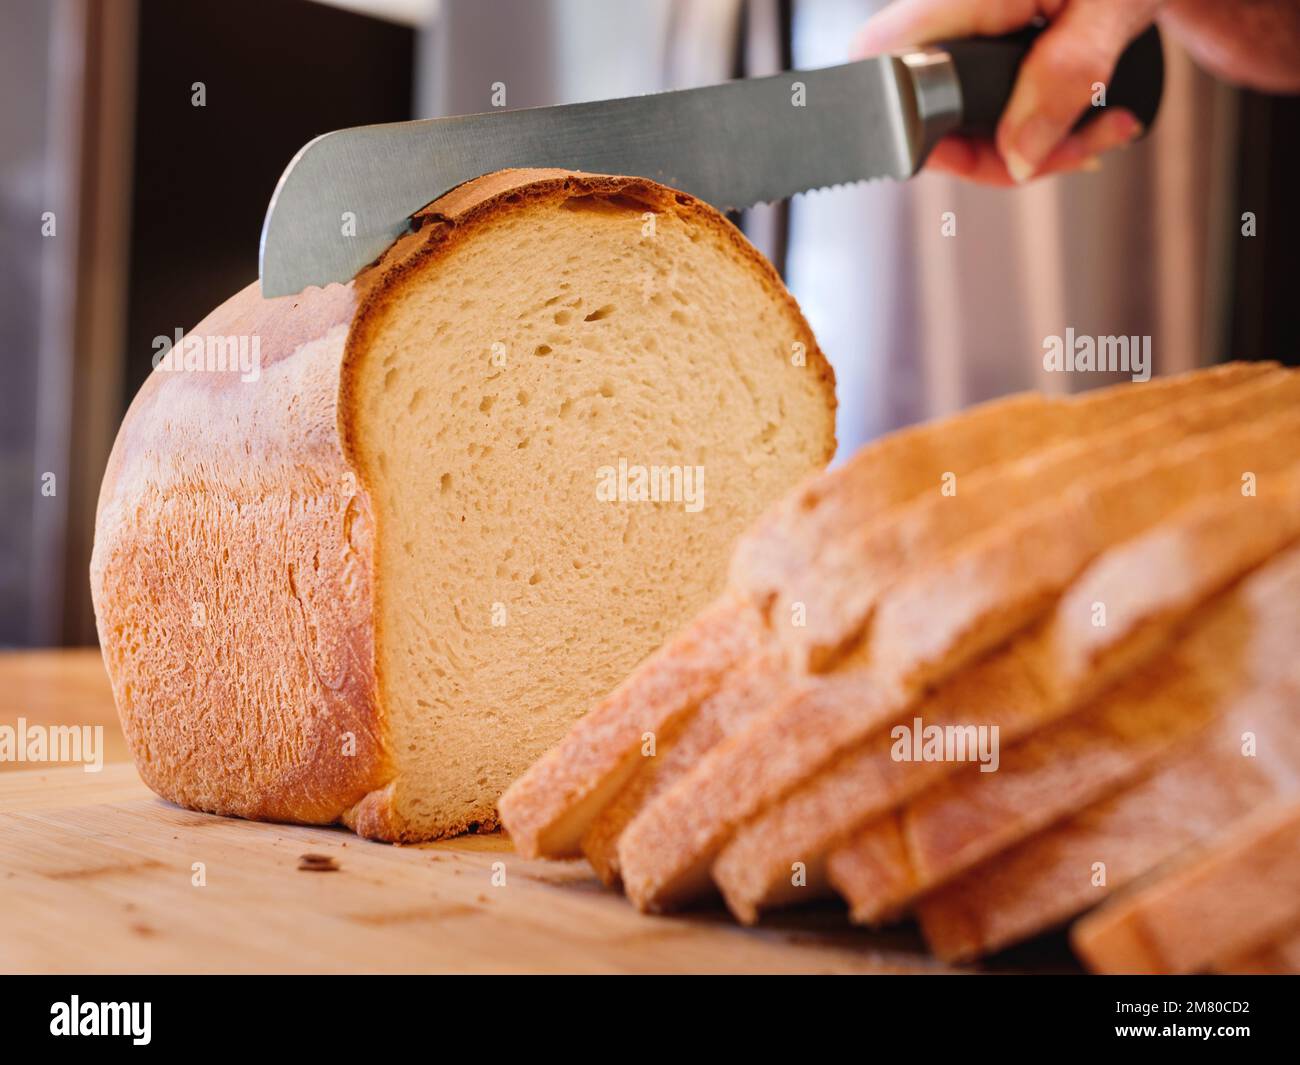 Bread and bread knife on a table in a … – Ottieni la licenza per le foto –  402188 ❘ StockFood